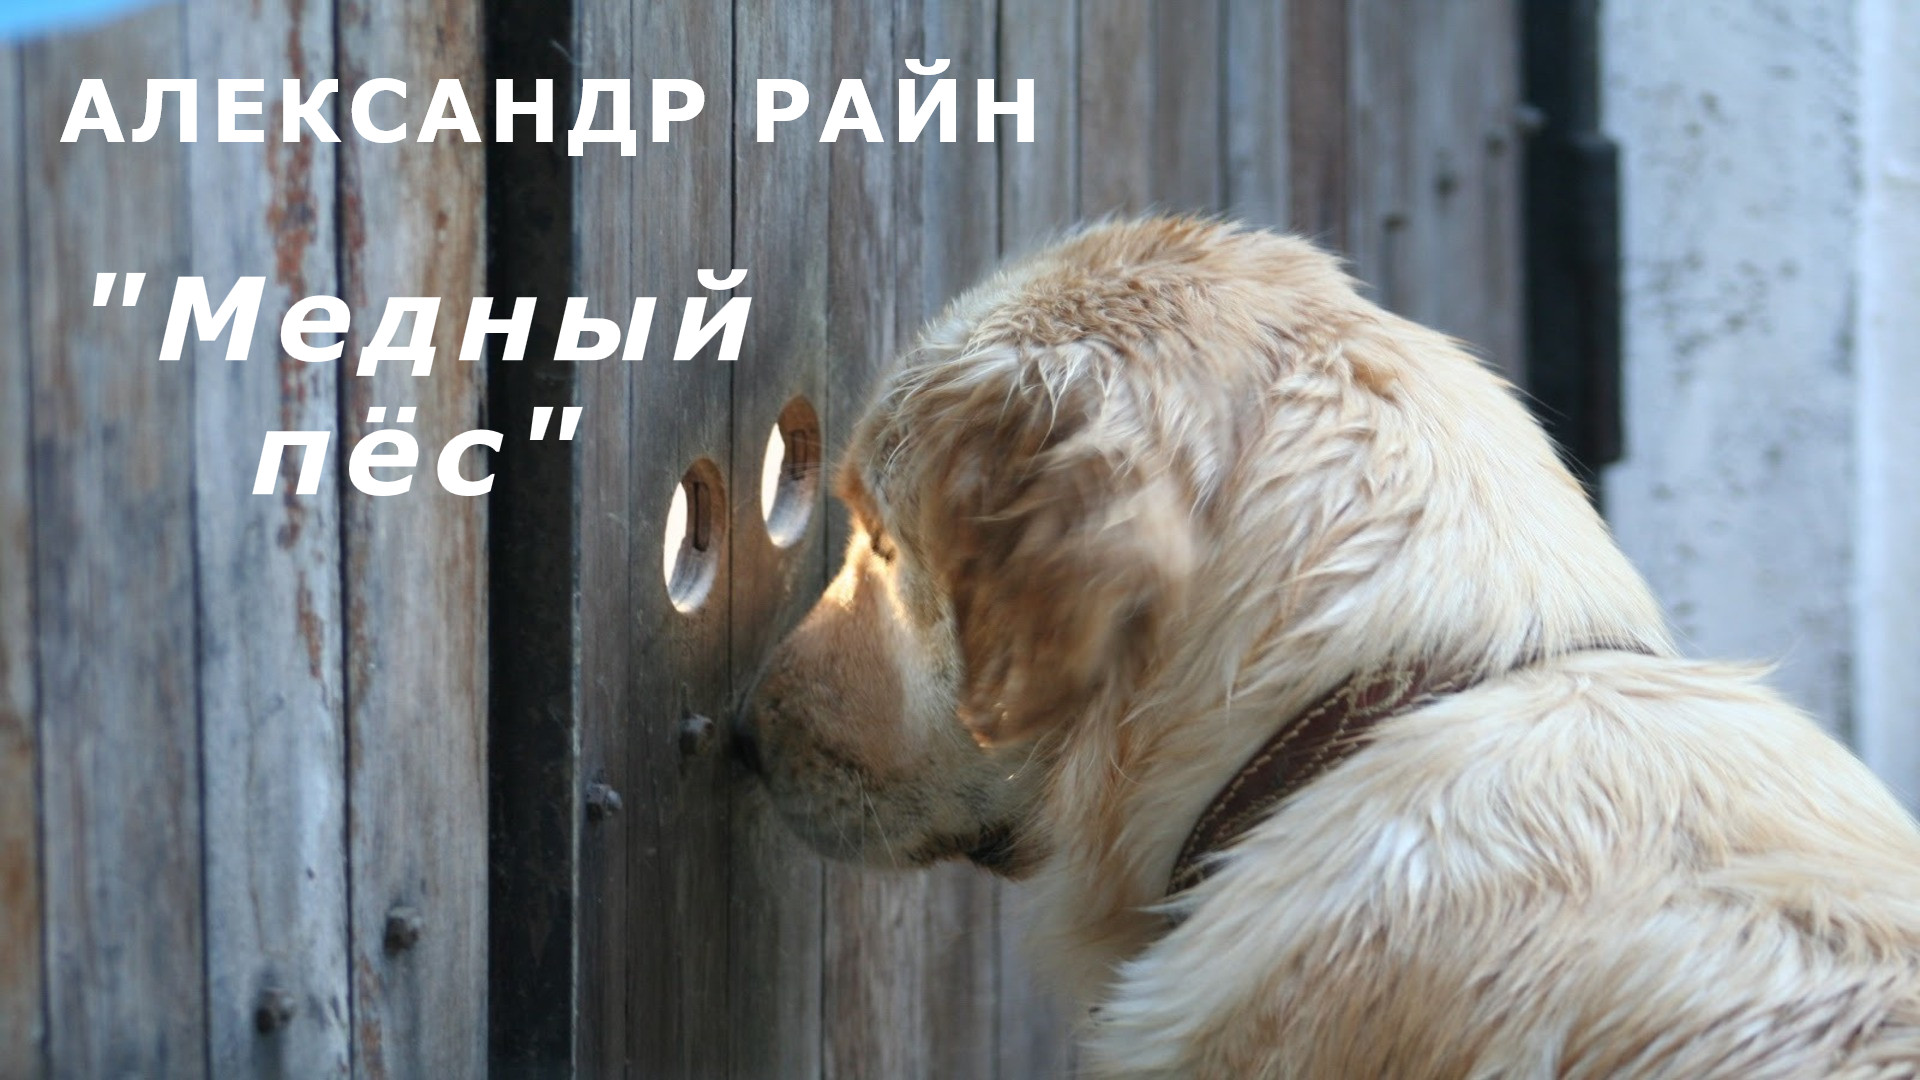 Посмотрите что тут есть. Очень внимательная собака. Собака на заборе. Осторожно очень внимательная собака.